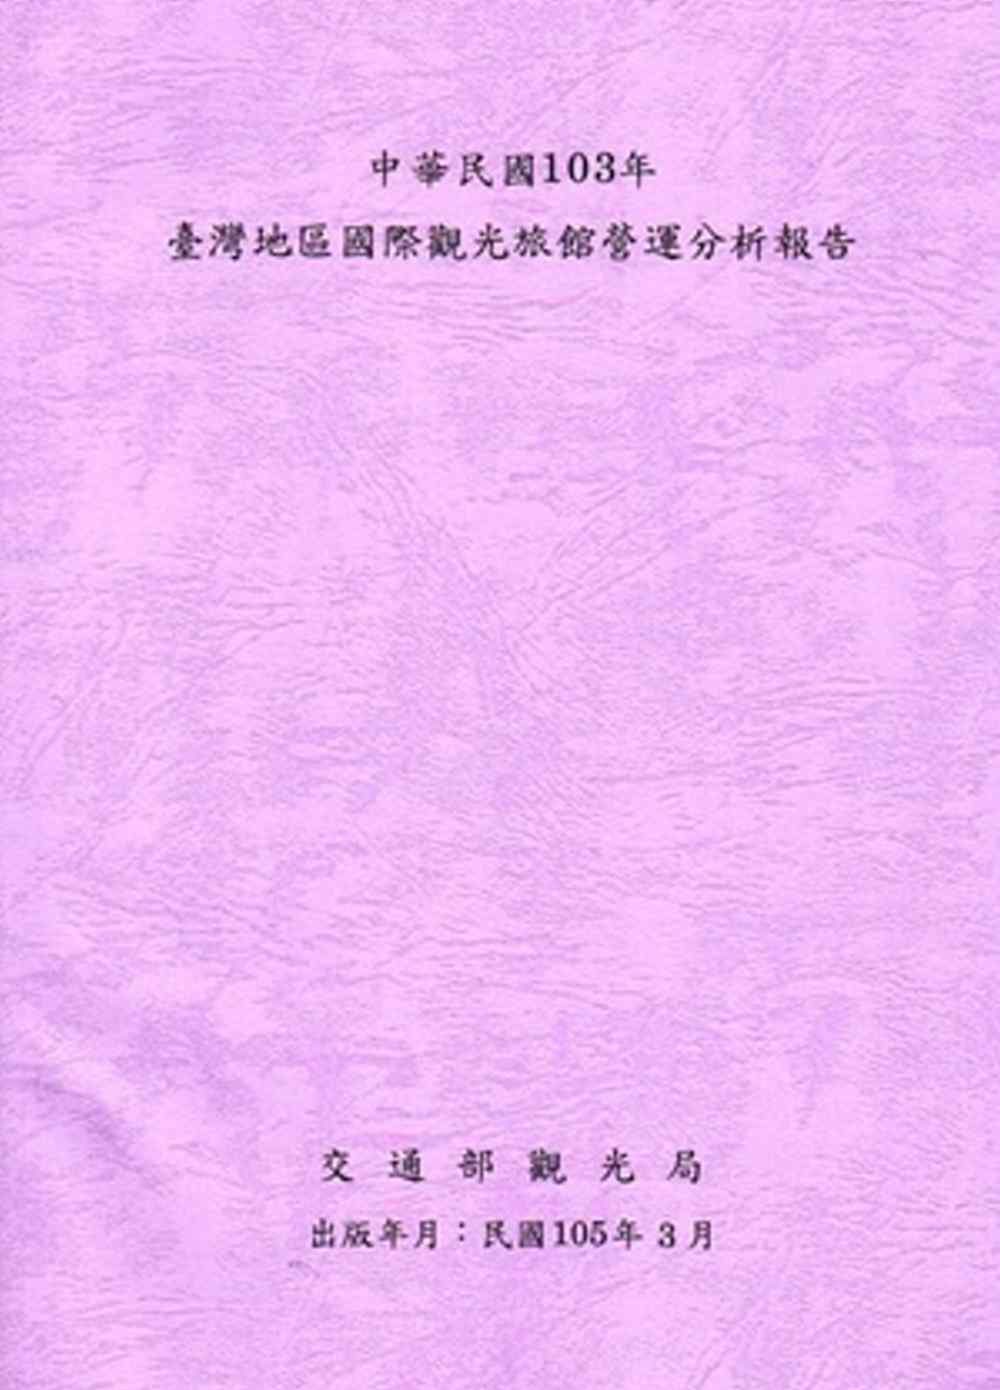 中華民國103年台灣地區國際觀光旅館營運分析報告